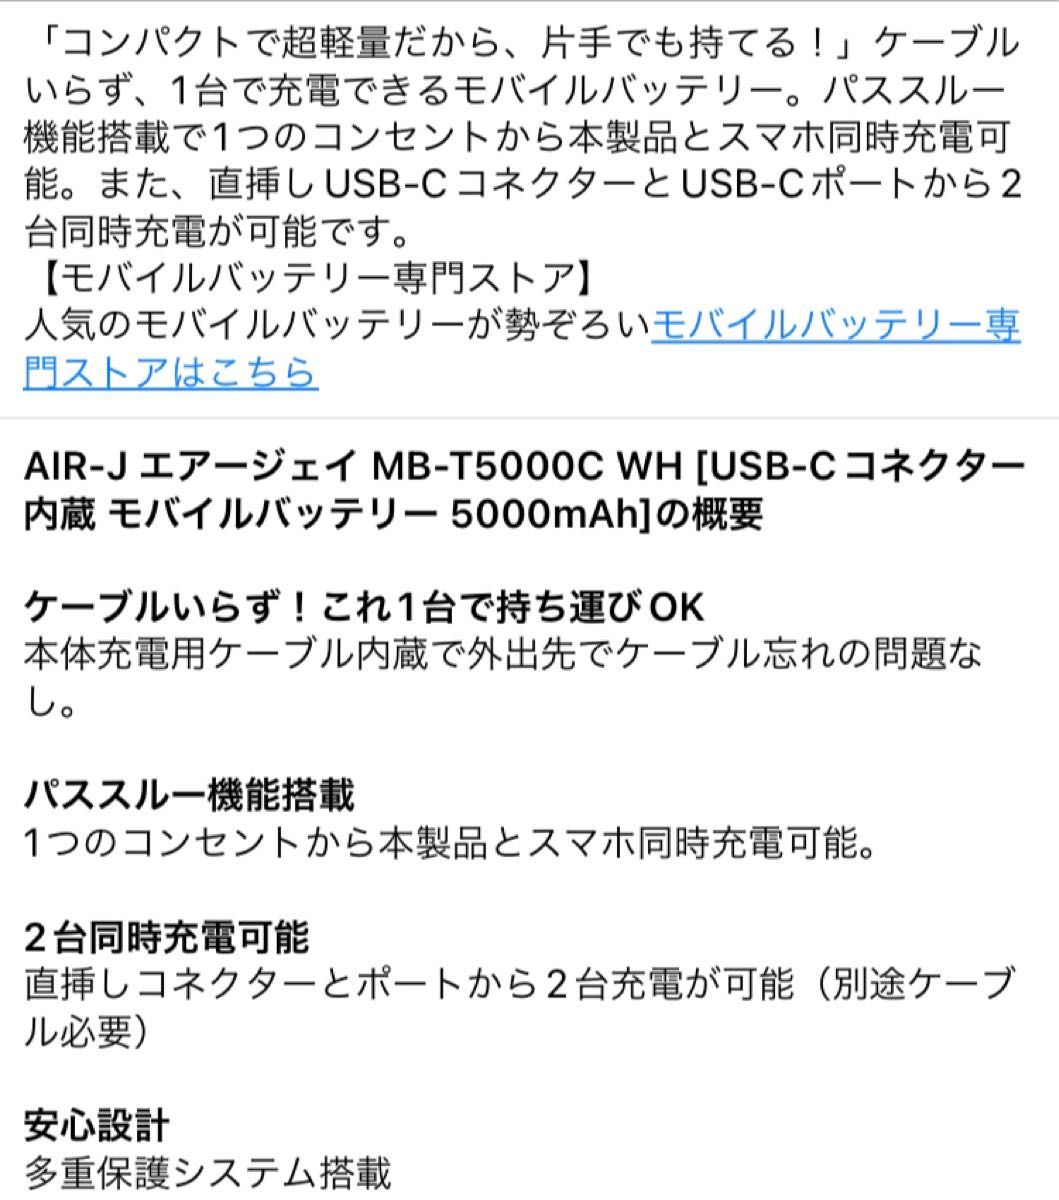 AIR-J MB-T5000C WH [USB-Cコネクター内蔵5000mAh]